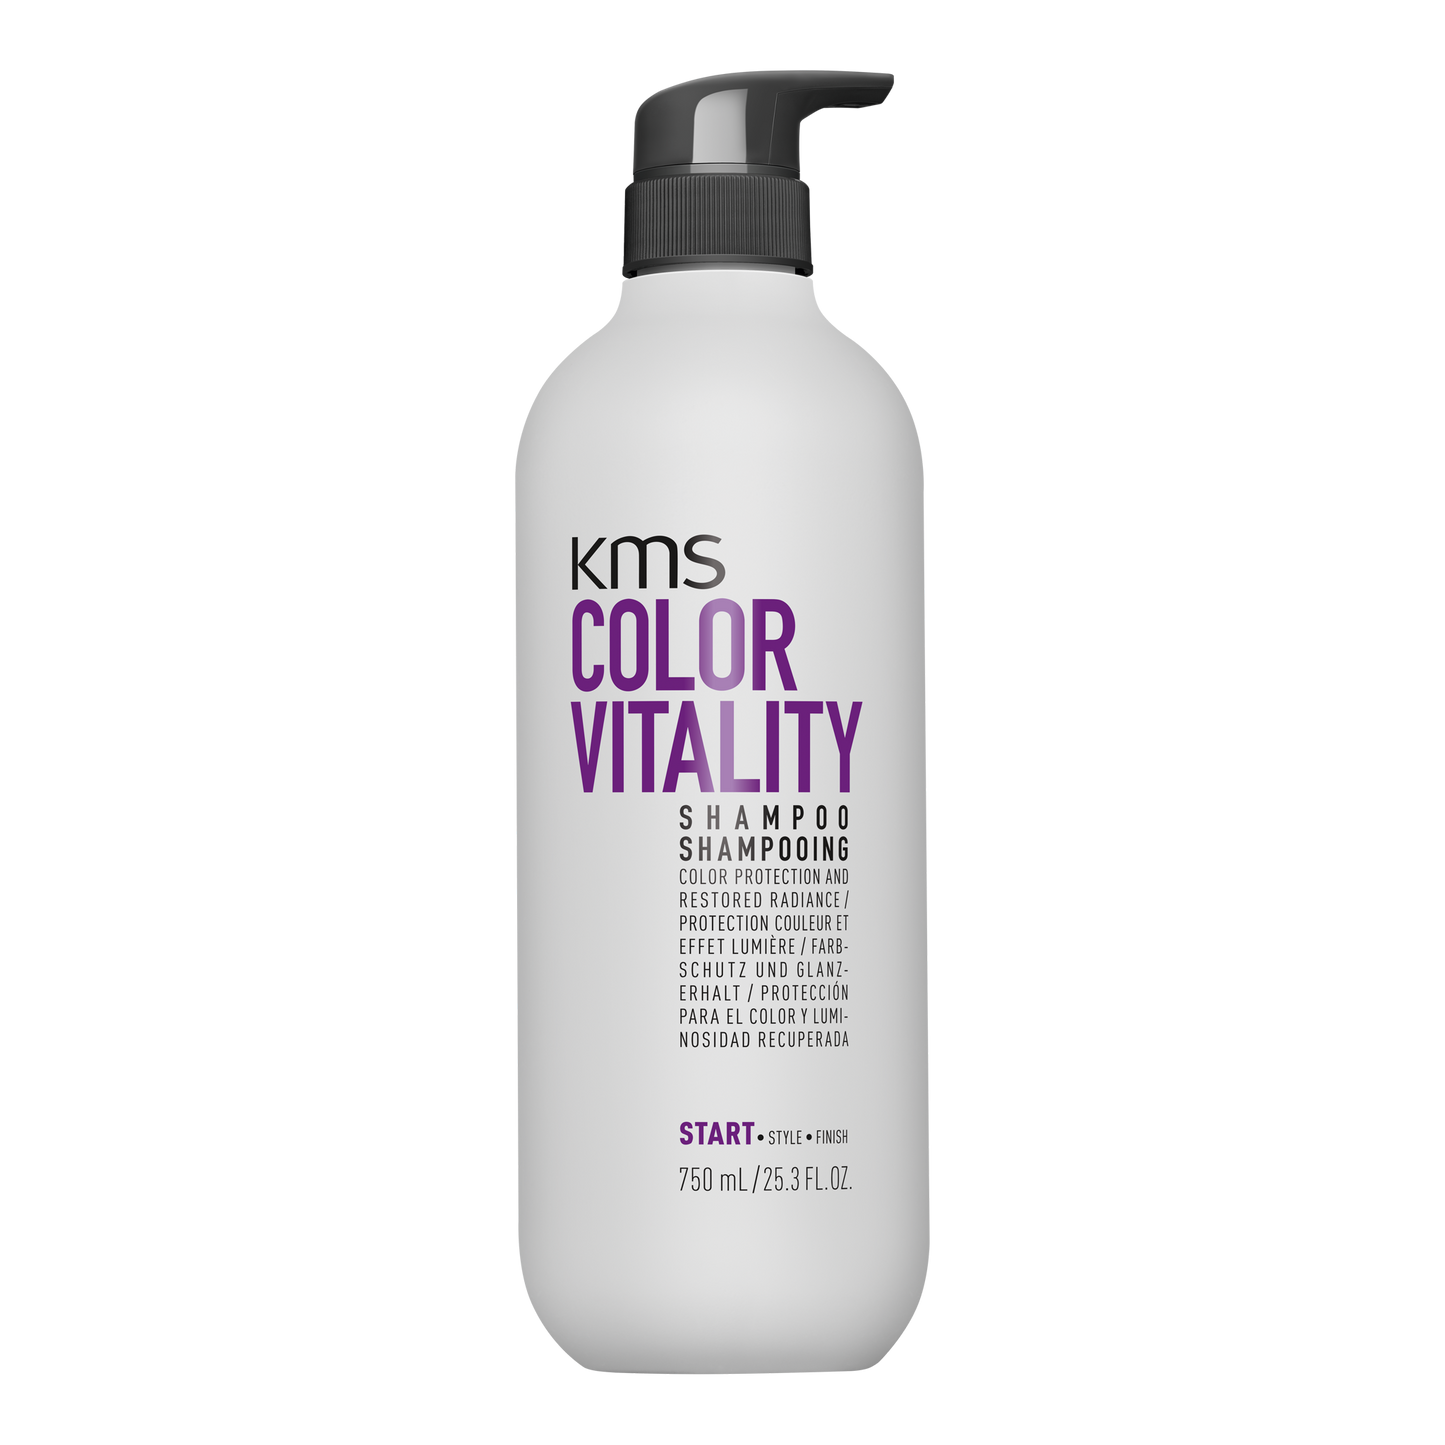 KMS COLORVITALITY Shampoo 750mL